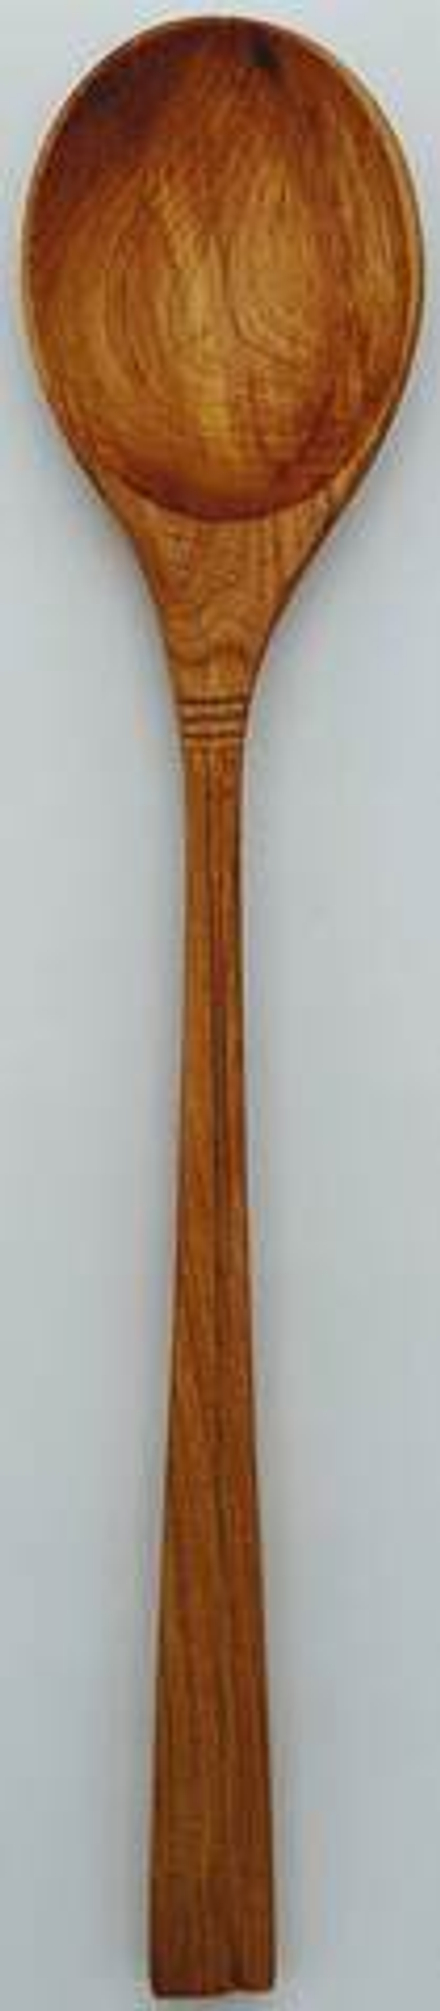 Ложка деревянная с длинной ручкой 21 см